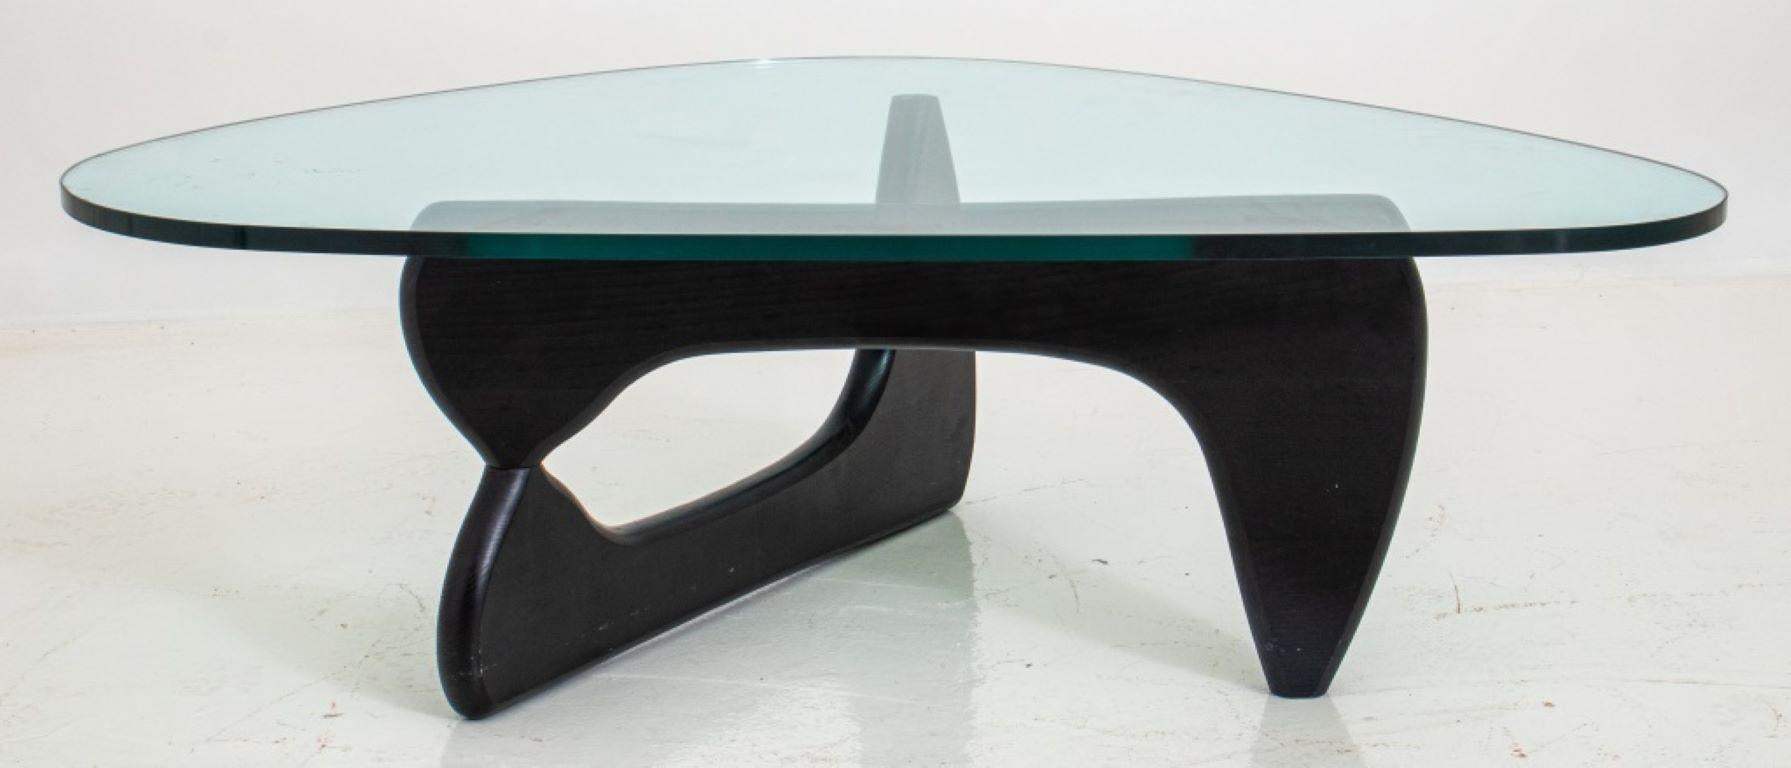 Moderner amorpher Tisch von Isamu Noguchi (Amerikaner, 1904 - 1988) aus der Mitte des Jahrhunderts. Der ebonisierte Sockel besteht aus gegenüberliegenden, klappbaren Teilen unter einer abgerundeten, elliptischen, dreieckigen Platte.  

Händler: